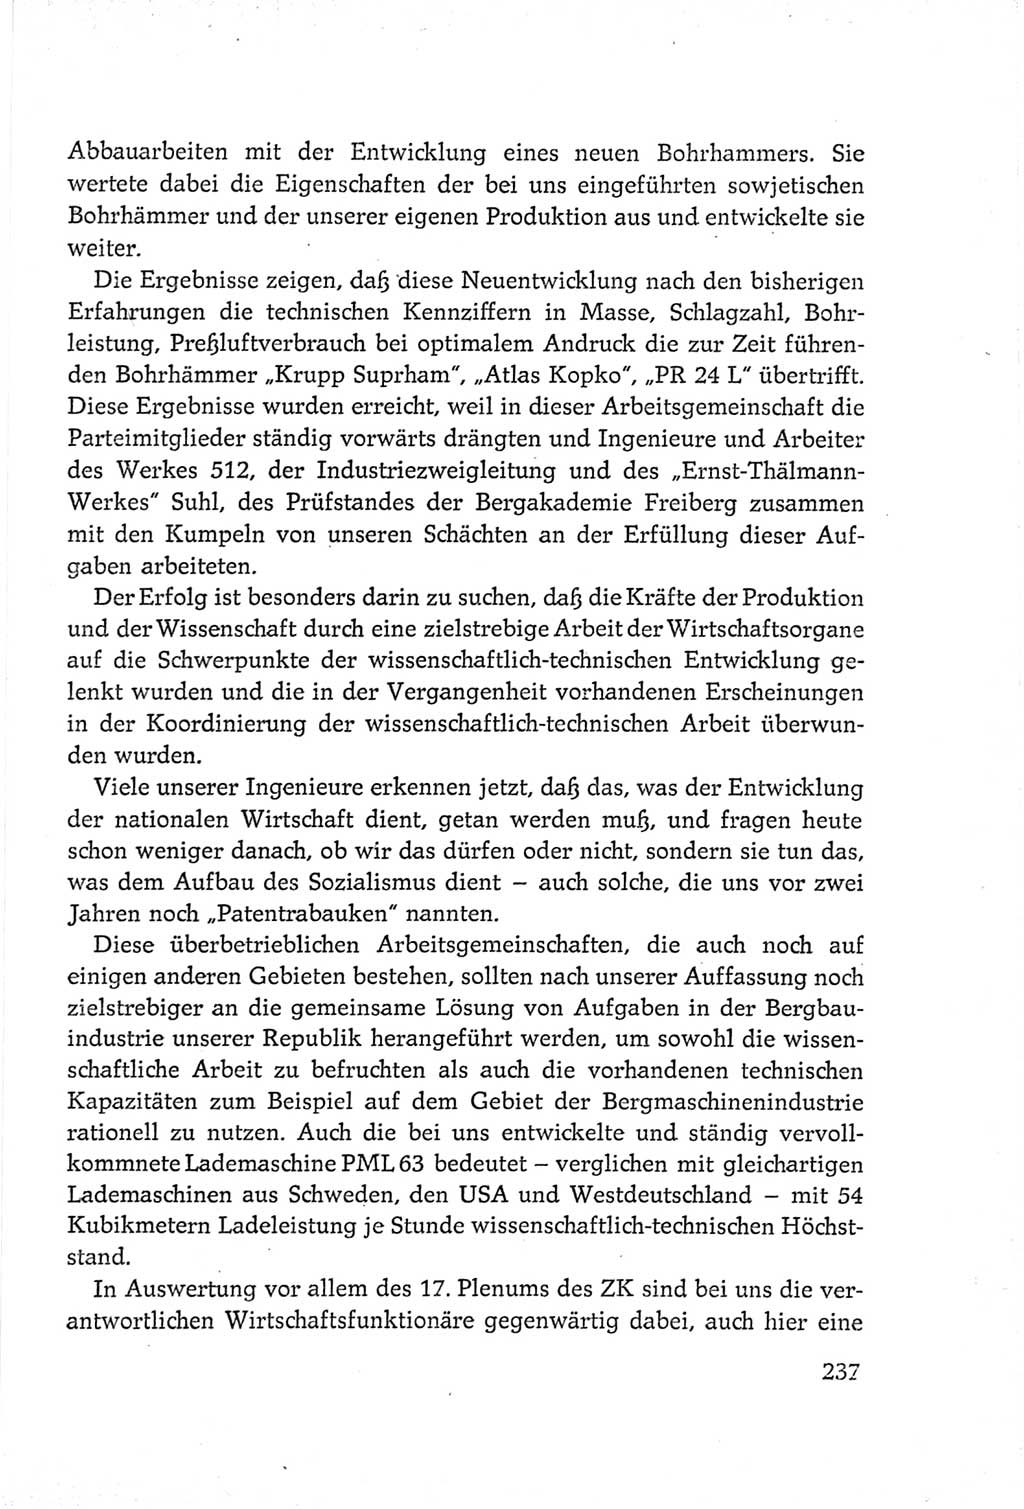 Protokoll der Verhandlungen des Ⅵ. Parteitages der Sozialistischen Einheitspartei Deutschlands (SED) [Deutsche Demokratische Republik (DDR)] 1963, Band Ⅲ, Seite 237 (Prot. Verh. Ⅵ. PT SED DDR 1963, Bd. Ⅲ, S. 237)